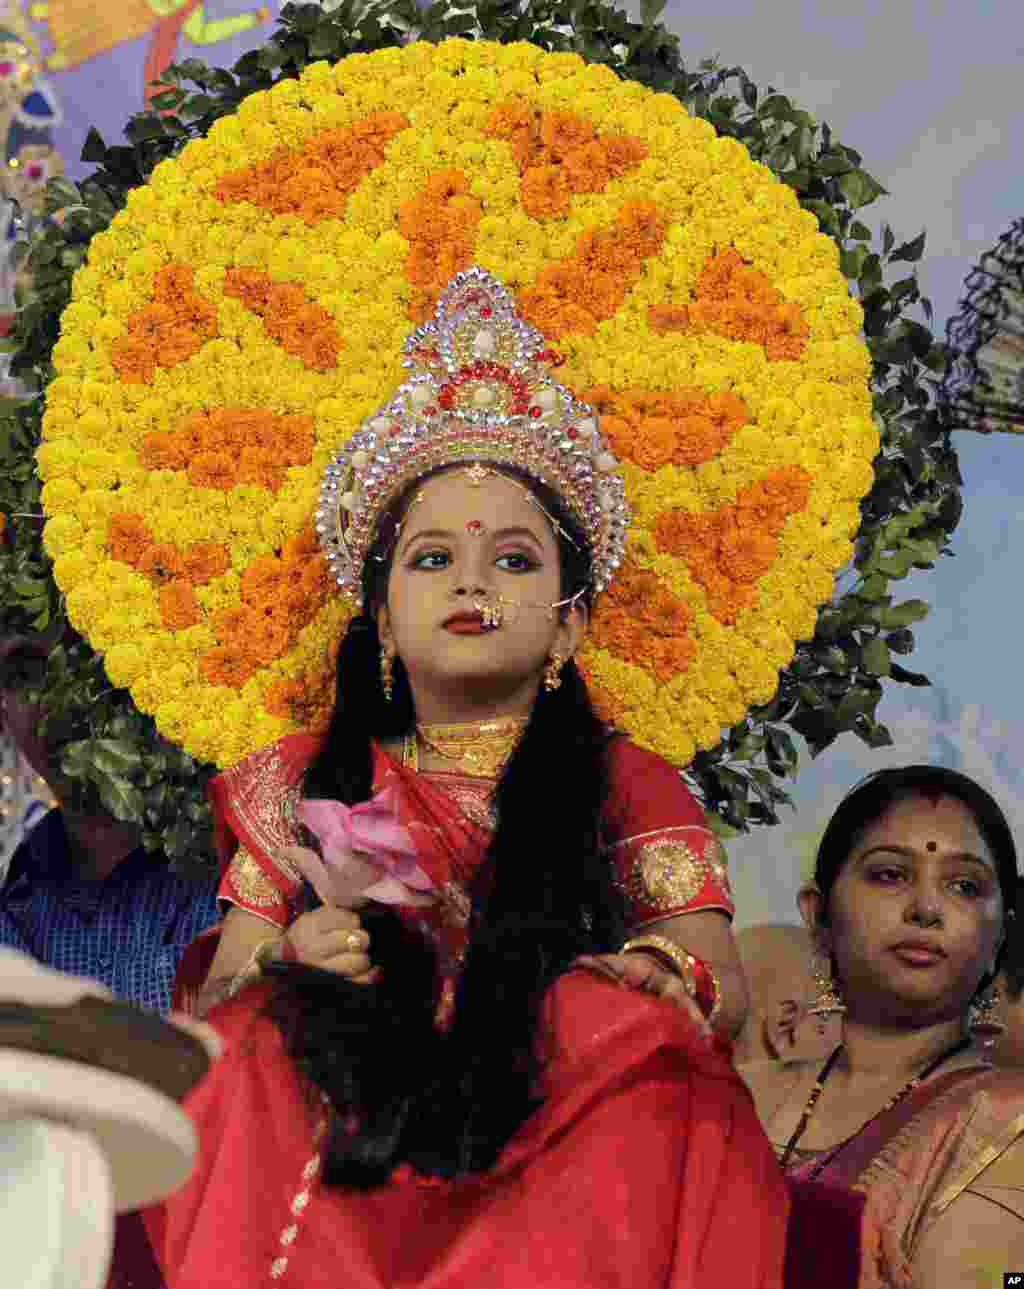 یک دختر جوان در معبدی در داکا، پایتخت بنگلادش، در حال انجام مراسم مذهبی است. او در نقش یک الهه در این مراسم ظاهر شده است. &nbsp;